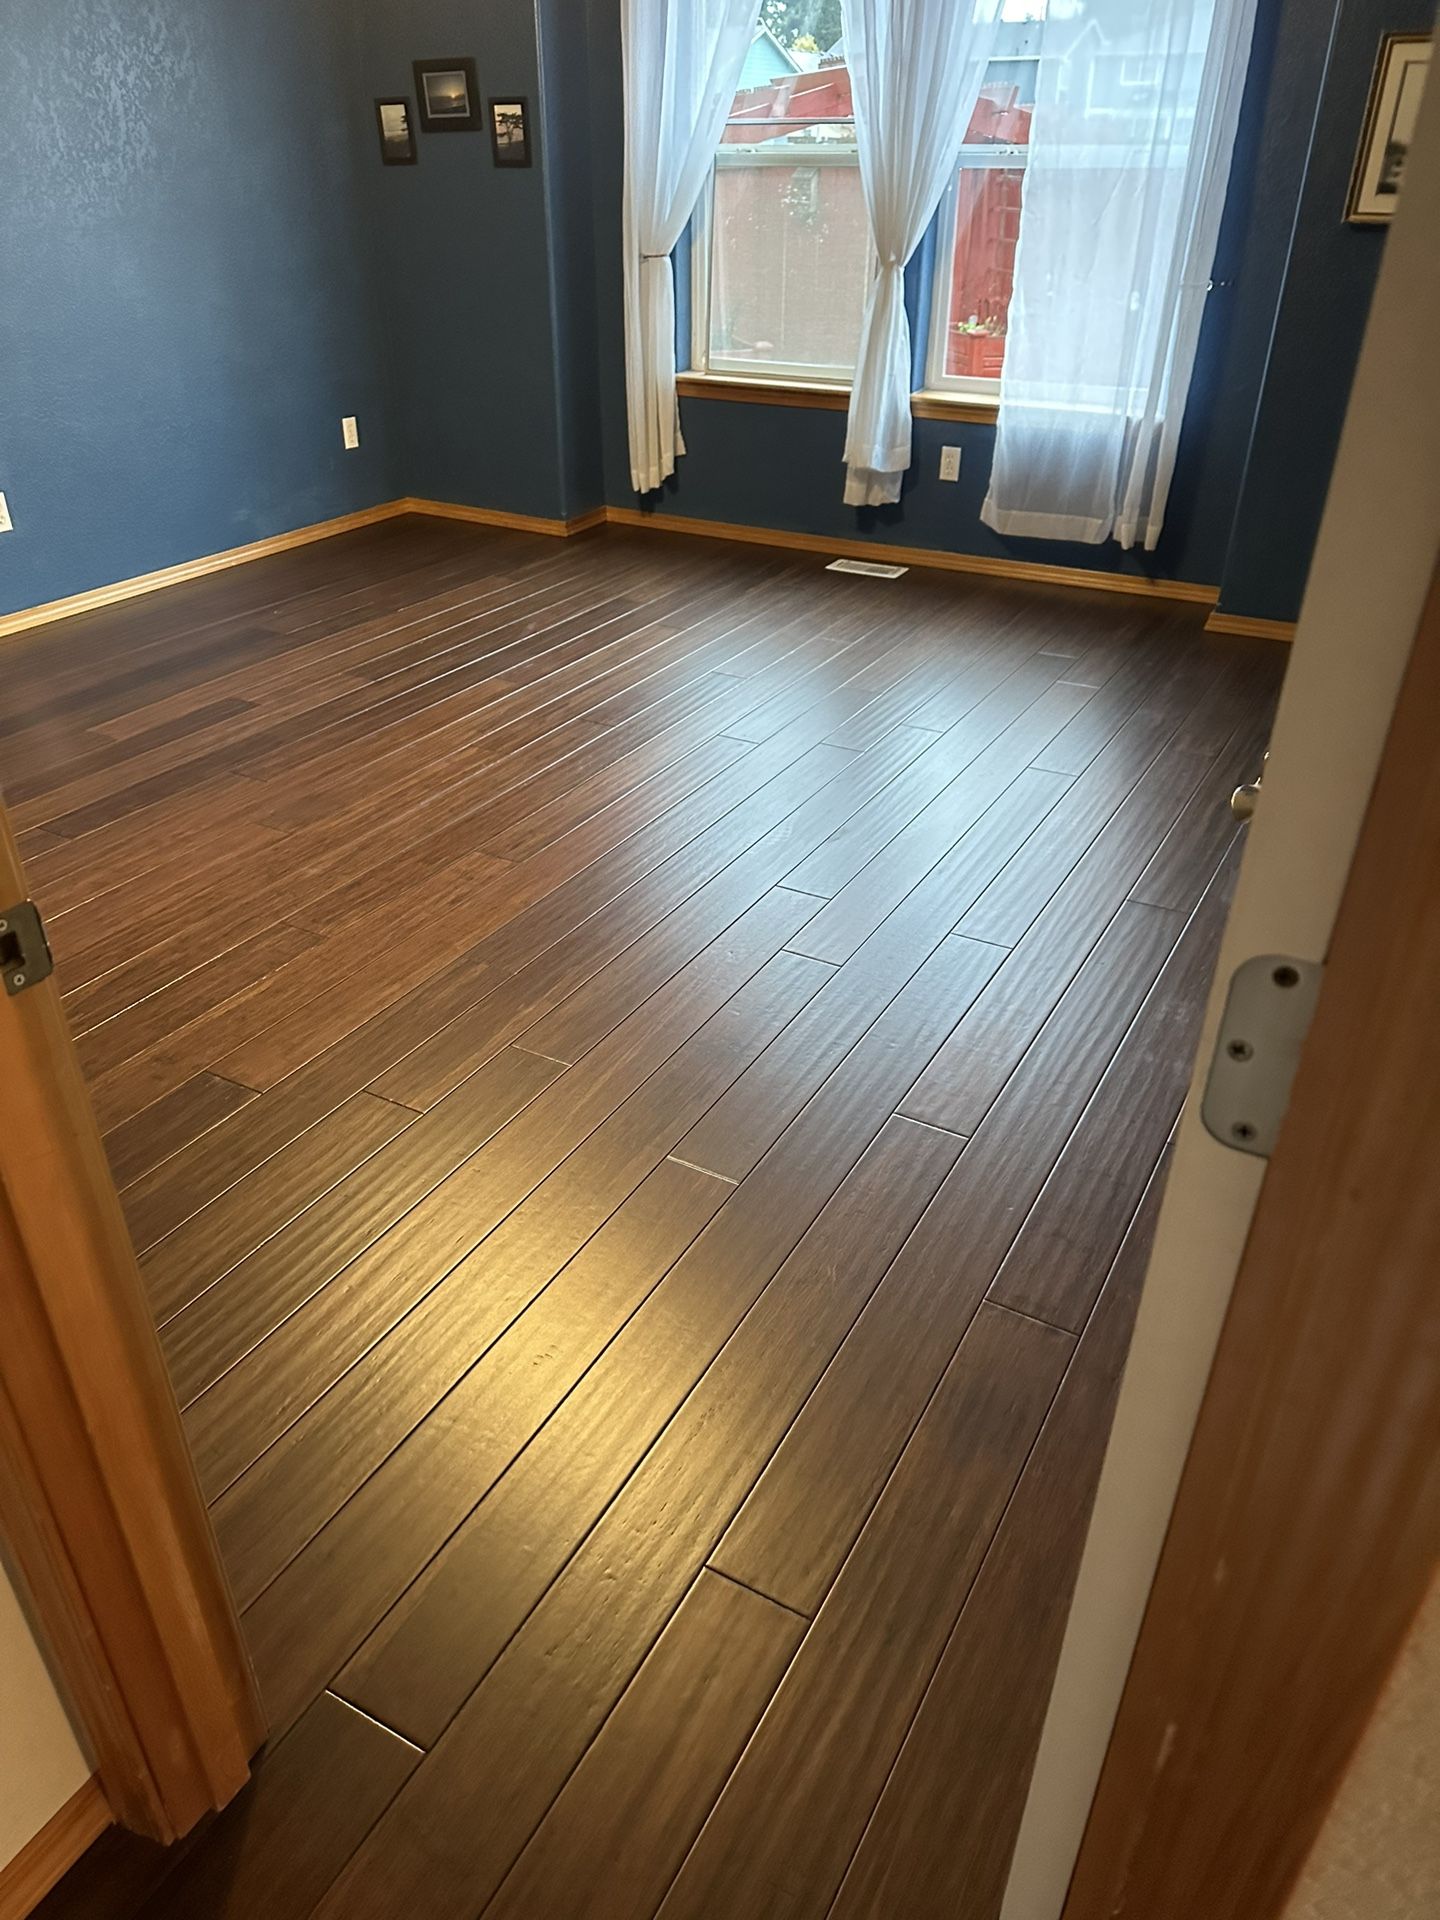 LVP flooring 100% Waterproof for Sale in Auburn, WA - OfferUp